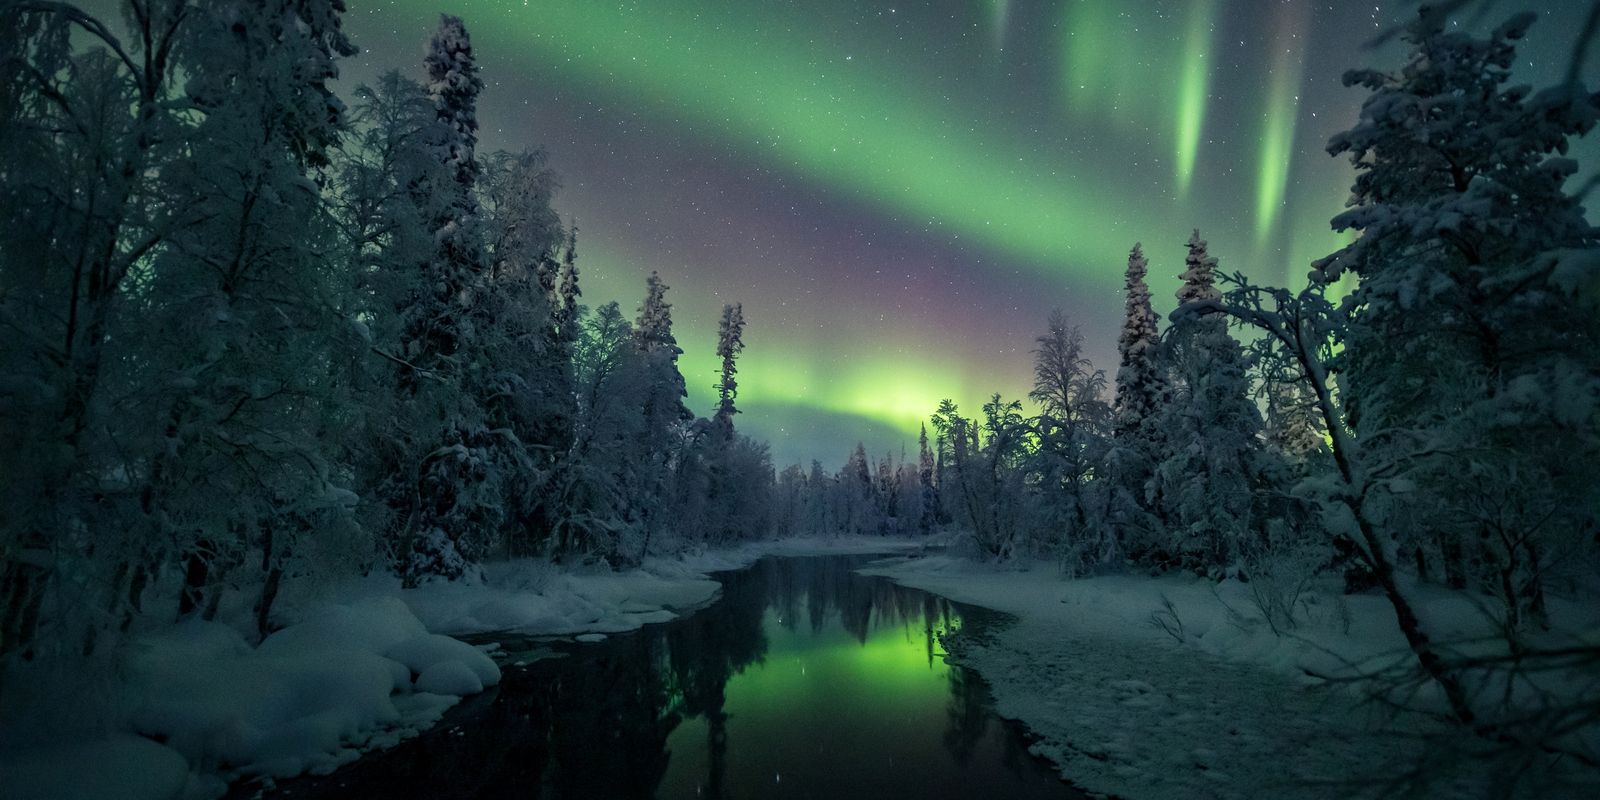 Aurora boreal: o que é, como e onde acontece - Mundo Educação